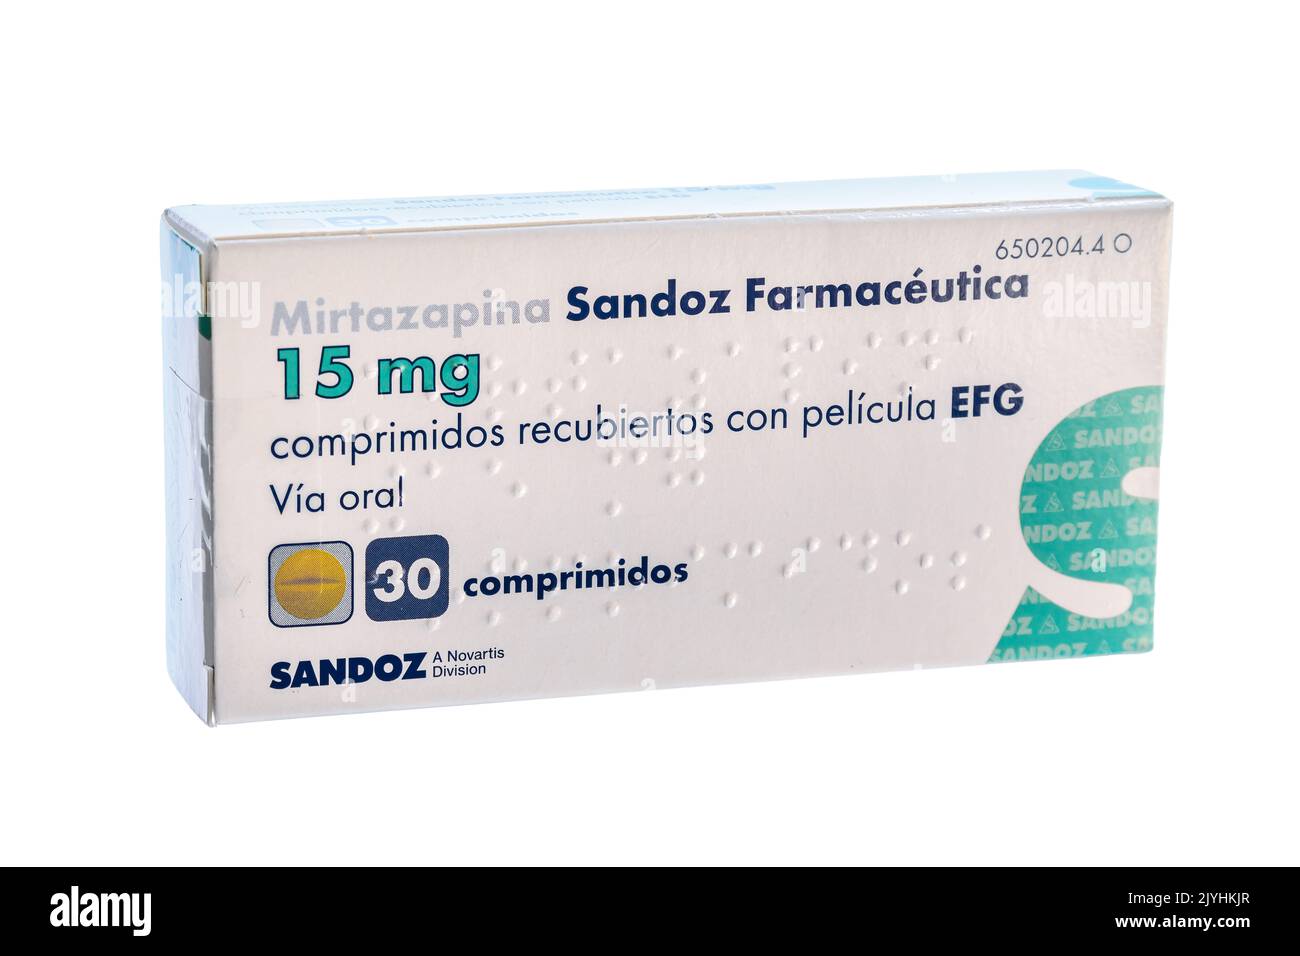 Huelva, Spanien - 8. September 2022: Mirtazapine Sandoz Farmaceutica. Es ist ein Antidepressivum. Es wird verwendet, um Depressionen und manchmal obse zu behandeln Stockfoto